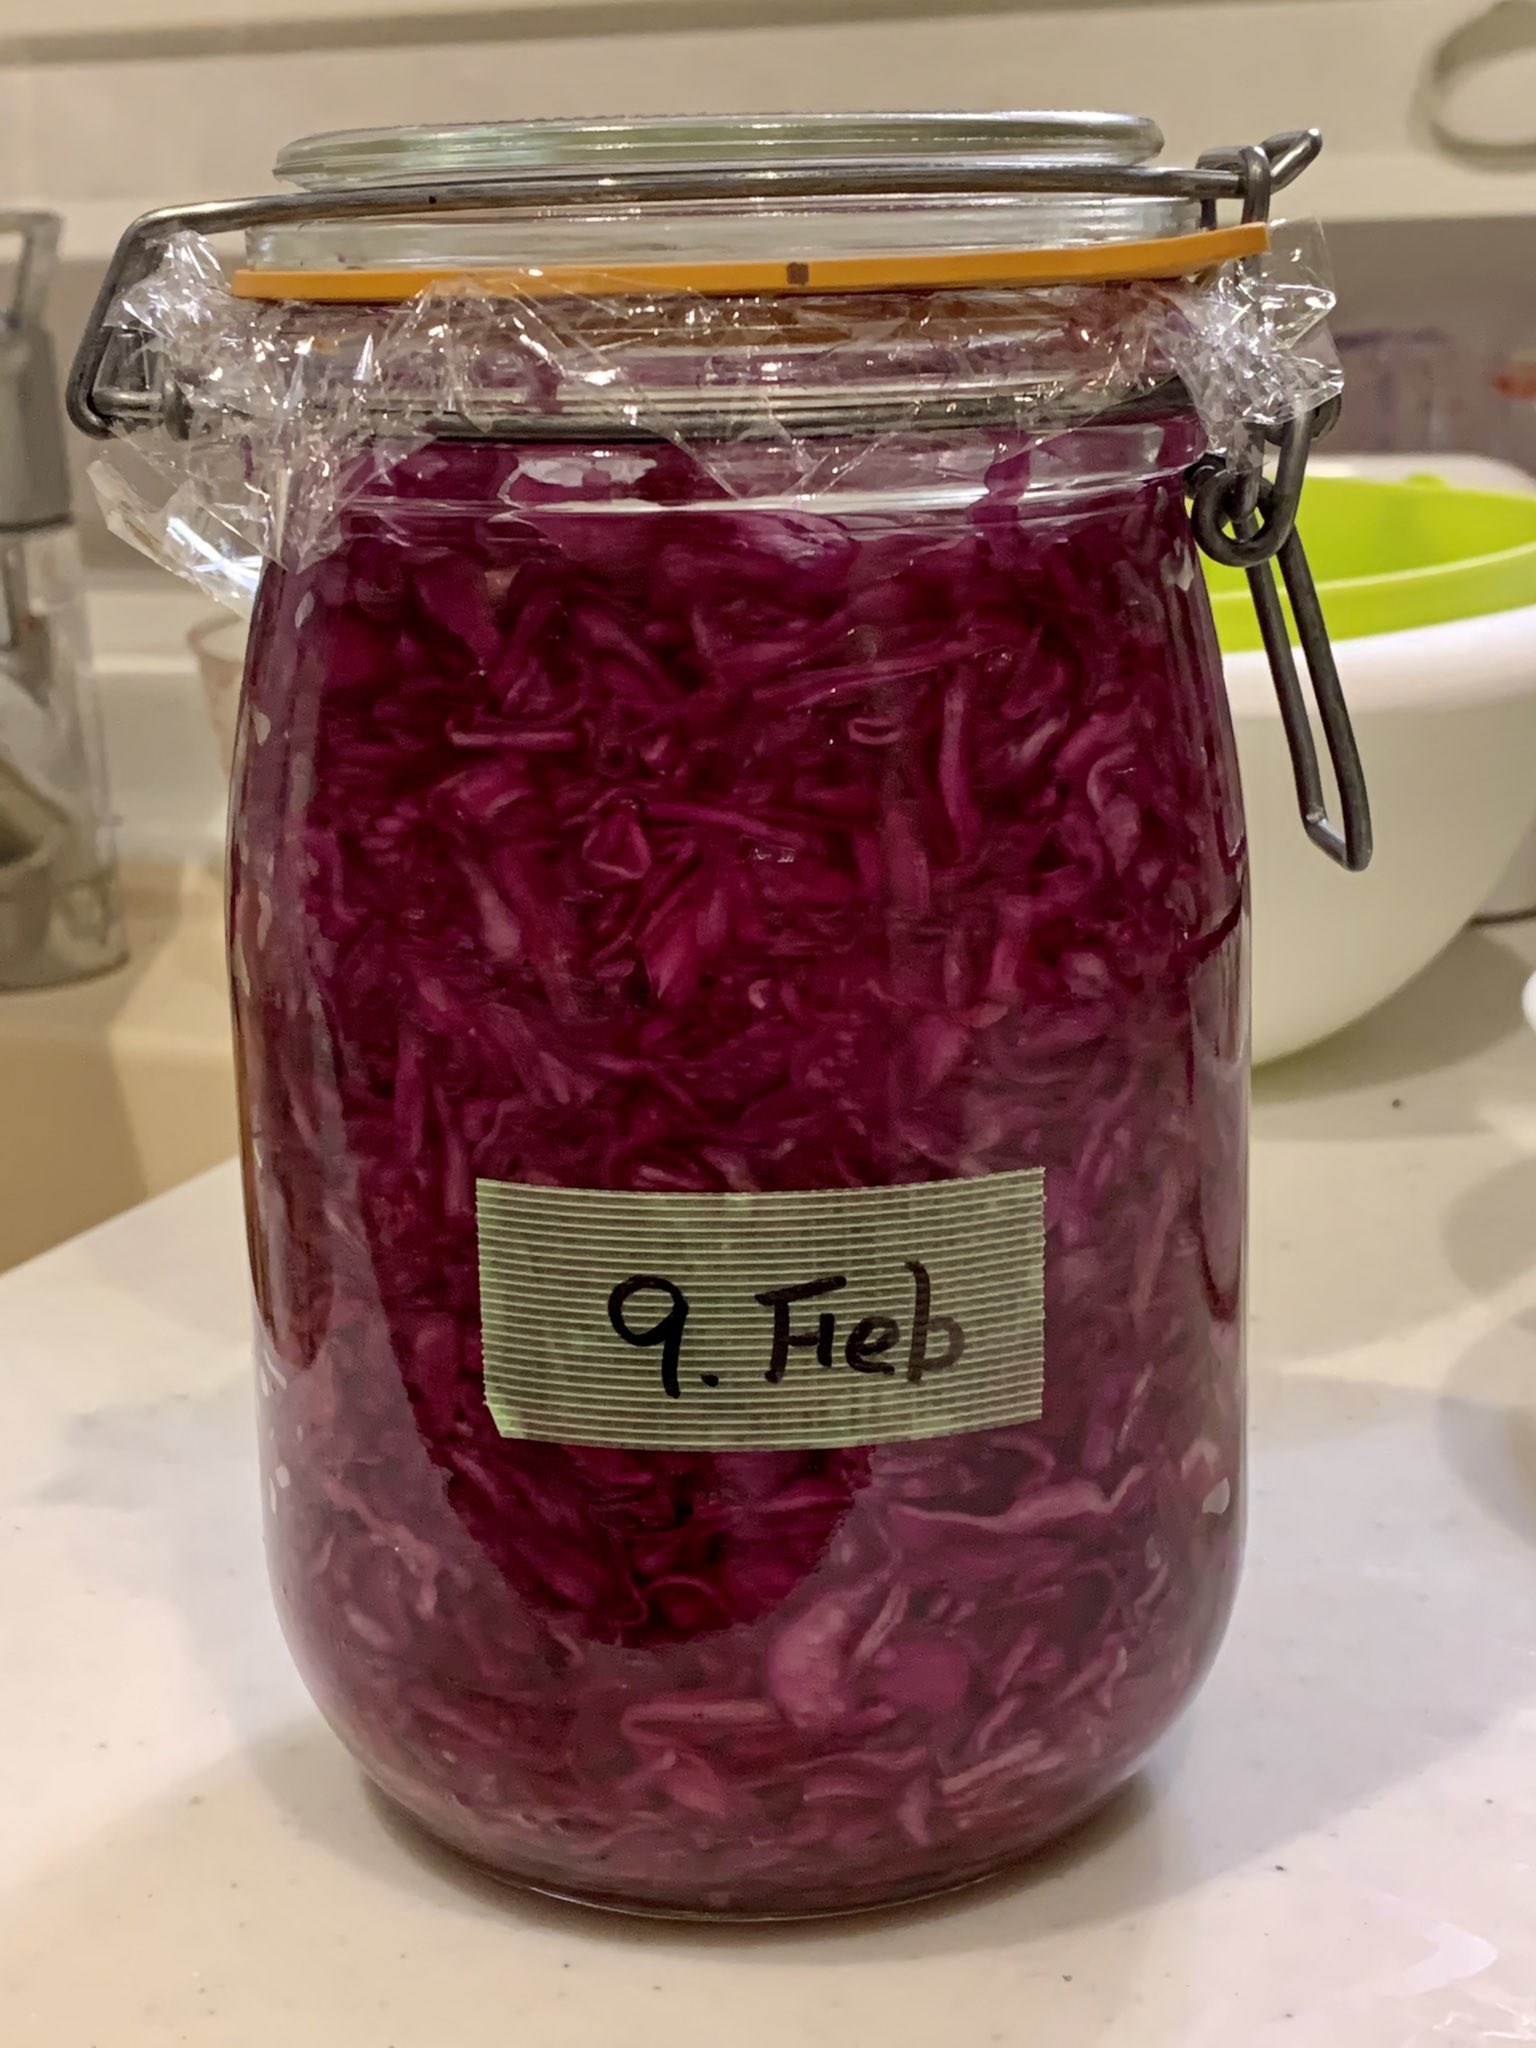 ポッキー翠 9日に仕込んだ紫キャベツのザワークラウトが発酵してきたので瓶詰め 緑キャベツより発酵が早い気がする ちなみに日付の英語表記は 2月なのに頭の中でスベって 1 9 と書いたり誤認したり の防止です Febは何月 と考える時間を確保